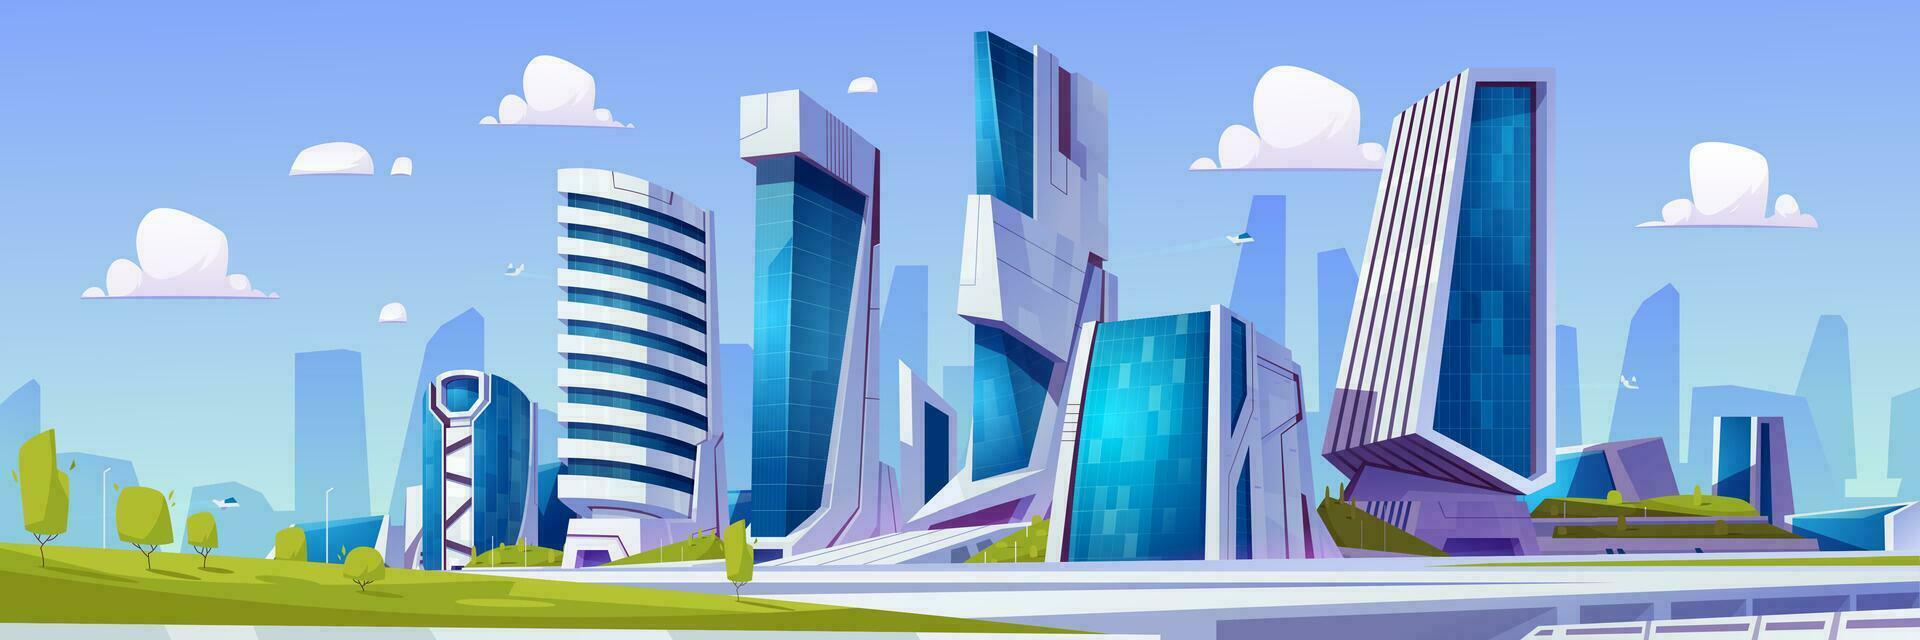 dessin animé futuriste ville avec vert parc vecteur